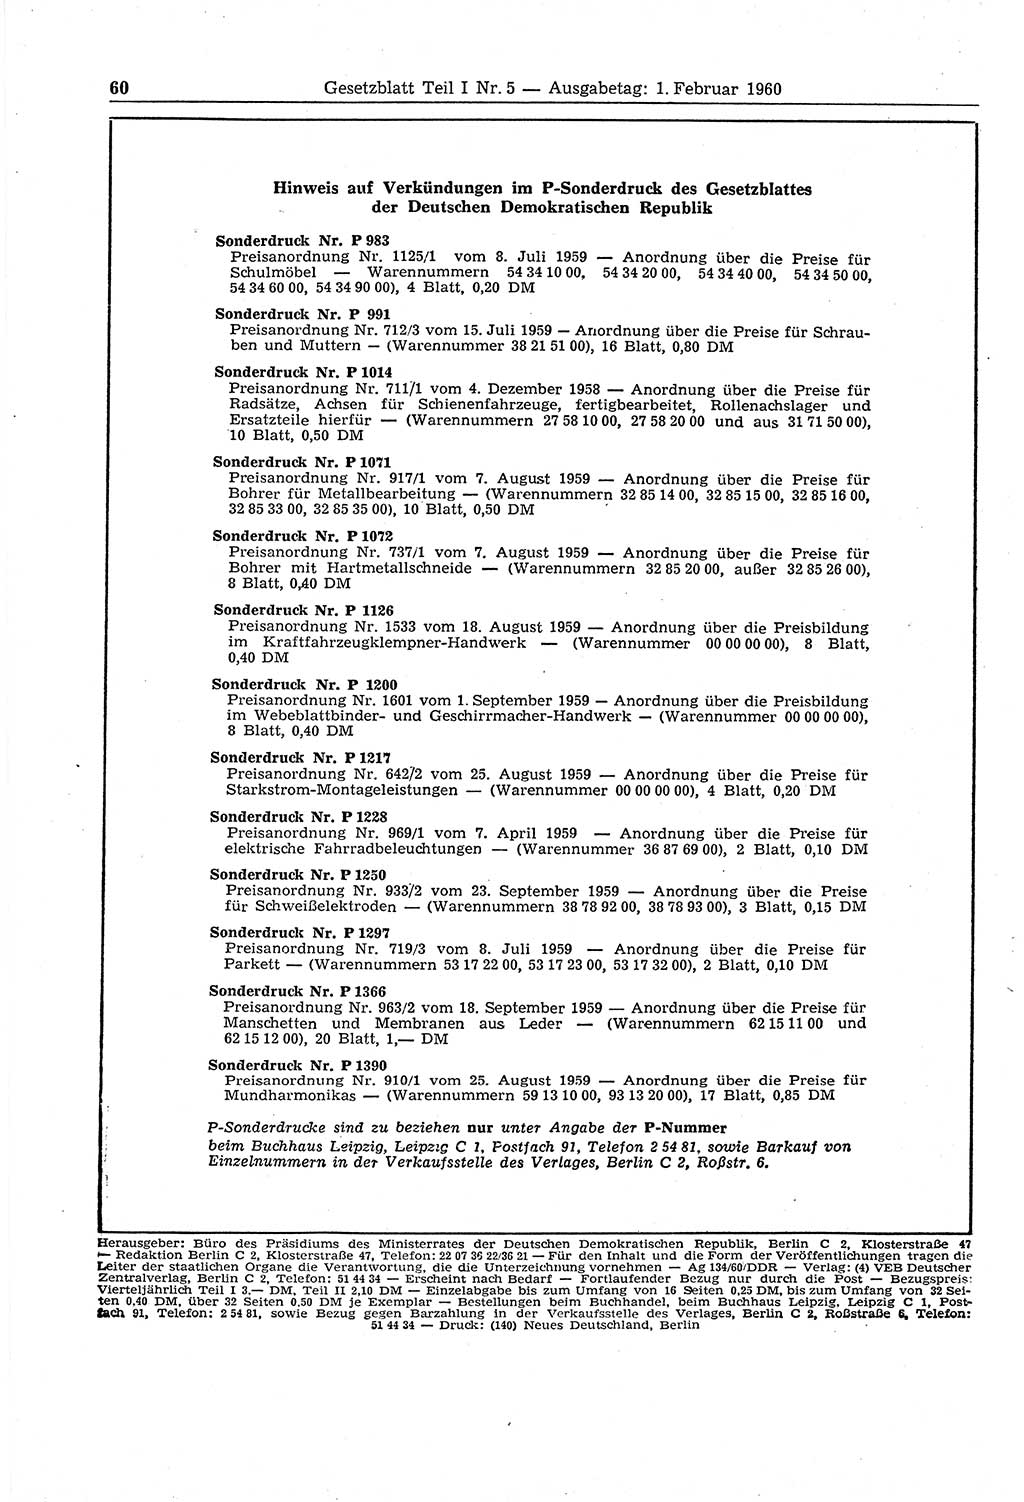 Gesetzblatt (GBl.) der Deutschen Demokratischen Republik (DDR) Teil Ⅰ 1960, Seite 60 (GBl. DDR Ⅰ 1960, S. 60)